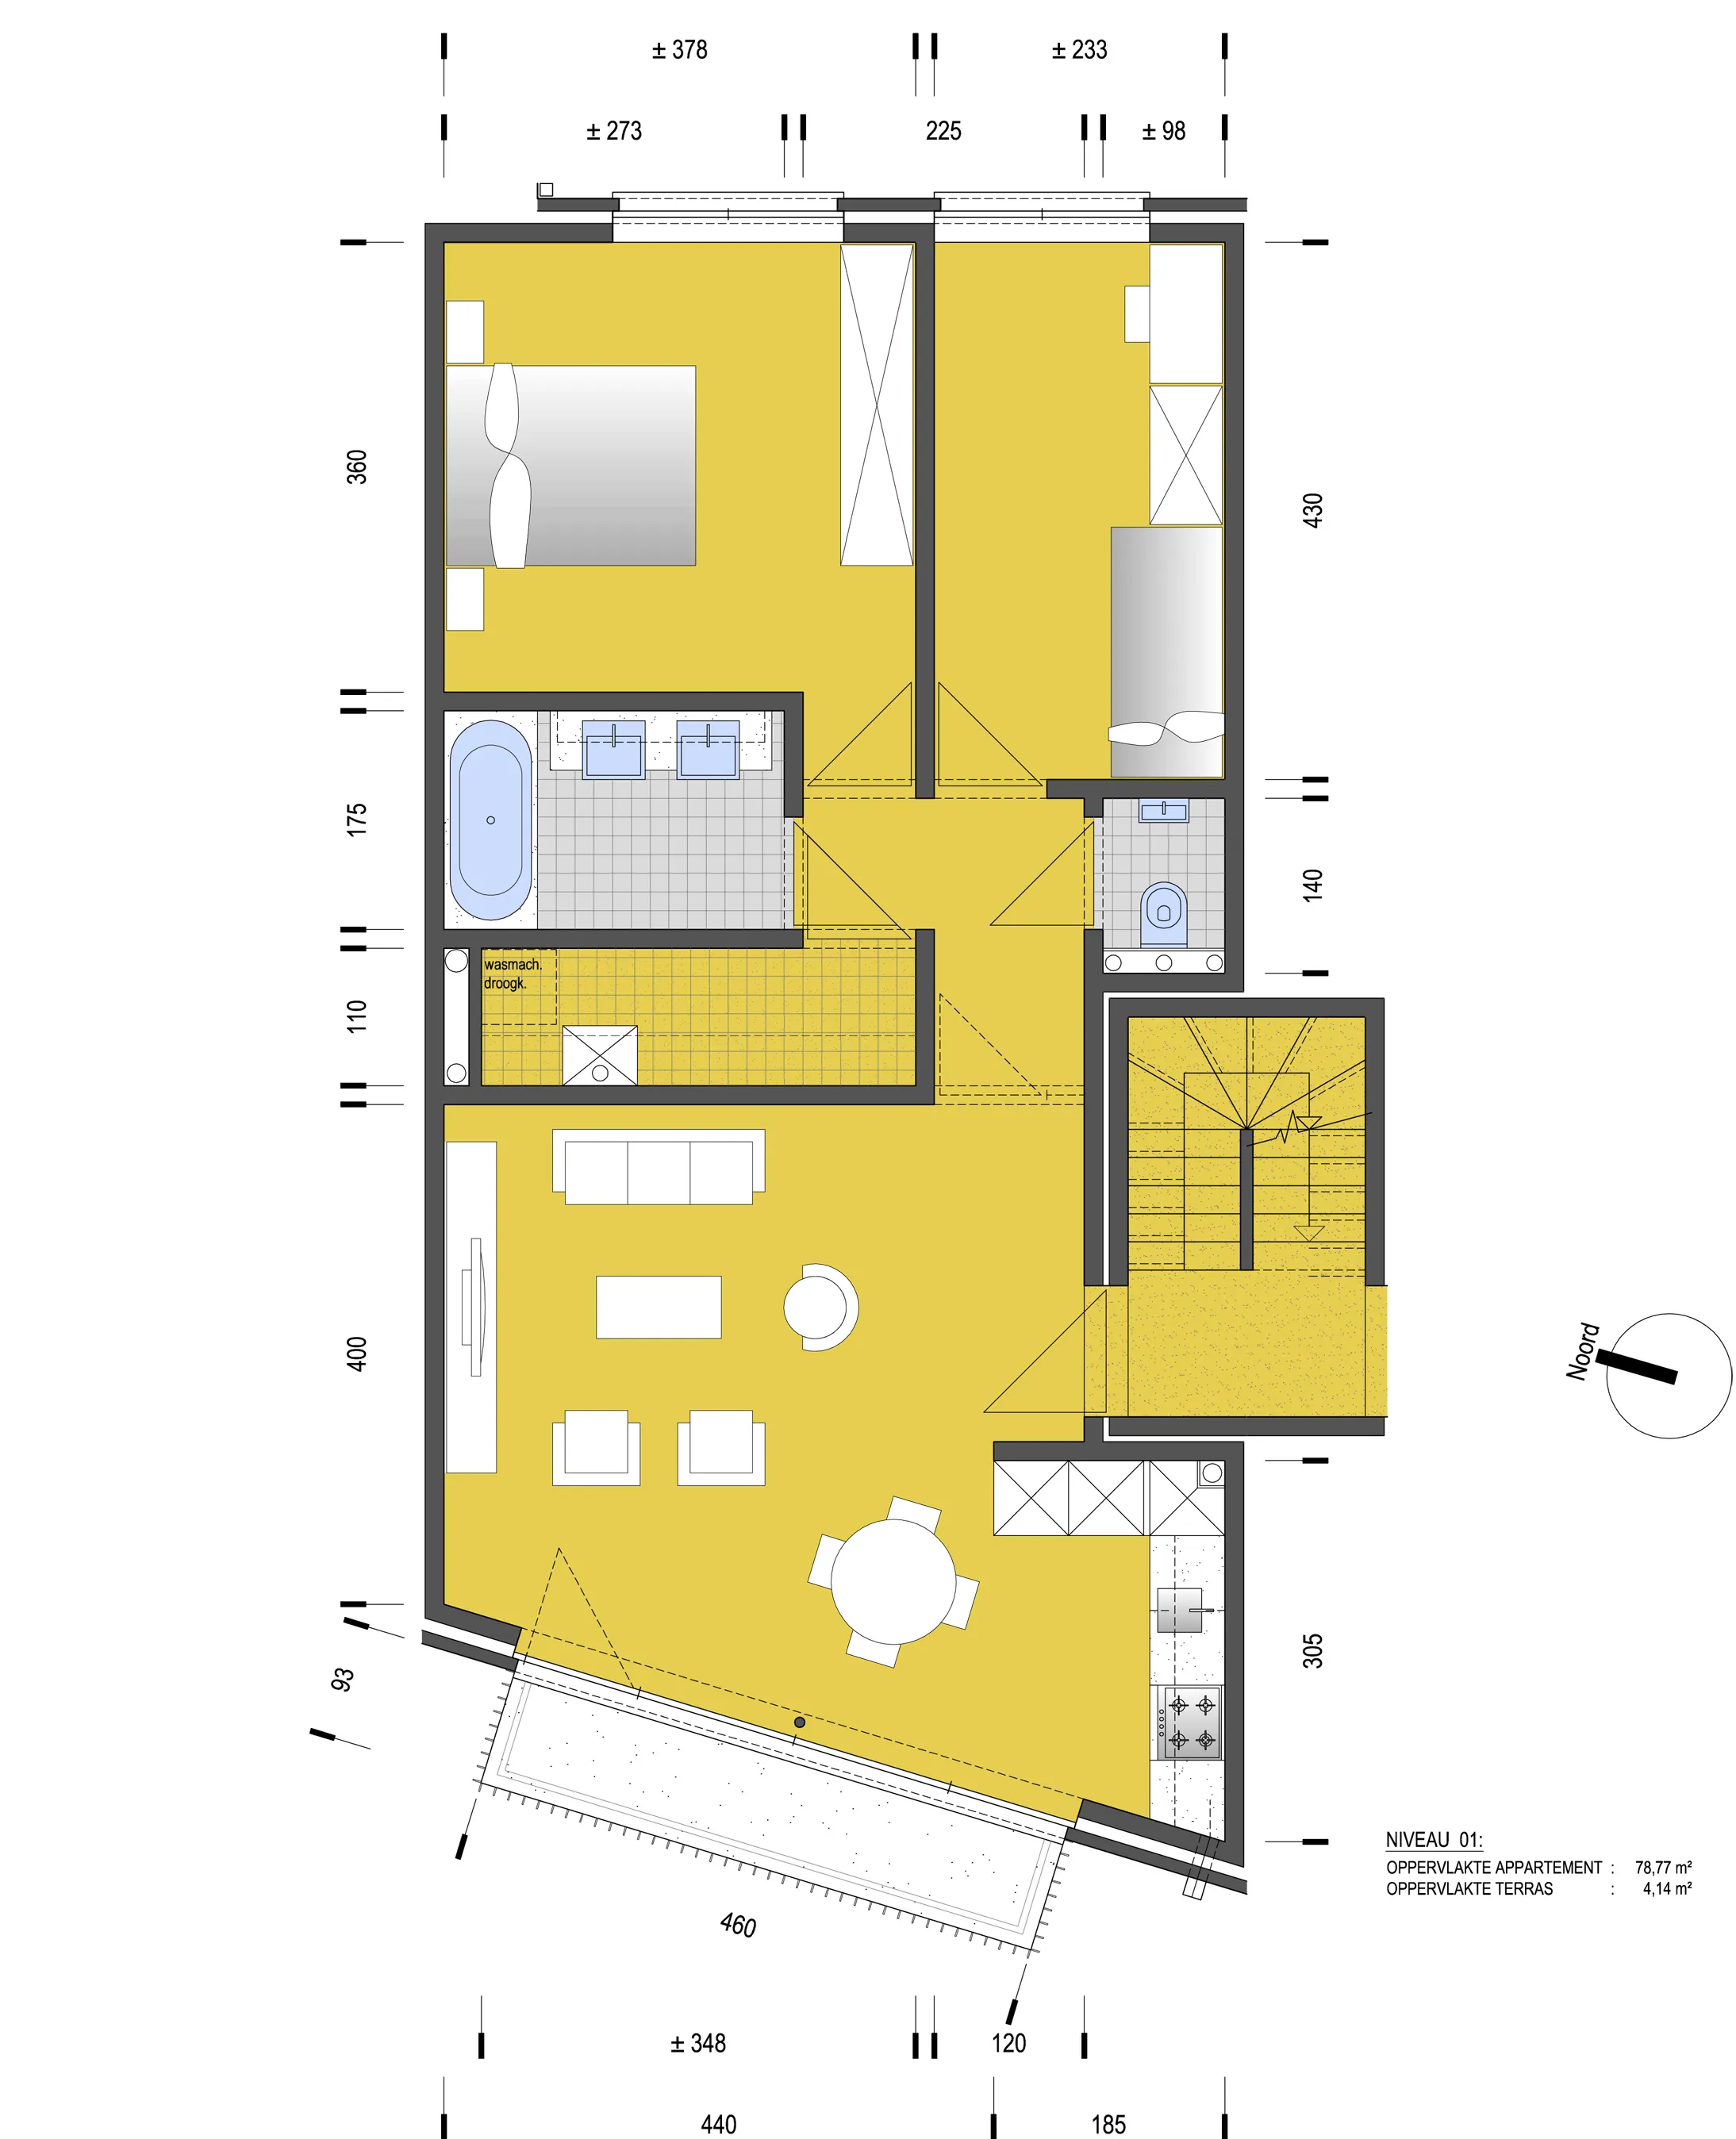 Nieuwbouw appartement (78m2) met twee slaapkamers in Nossegem1